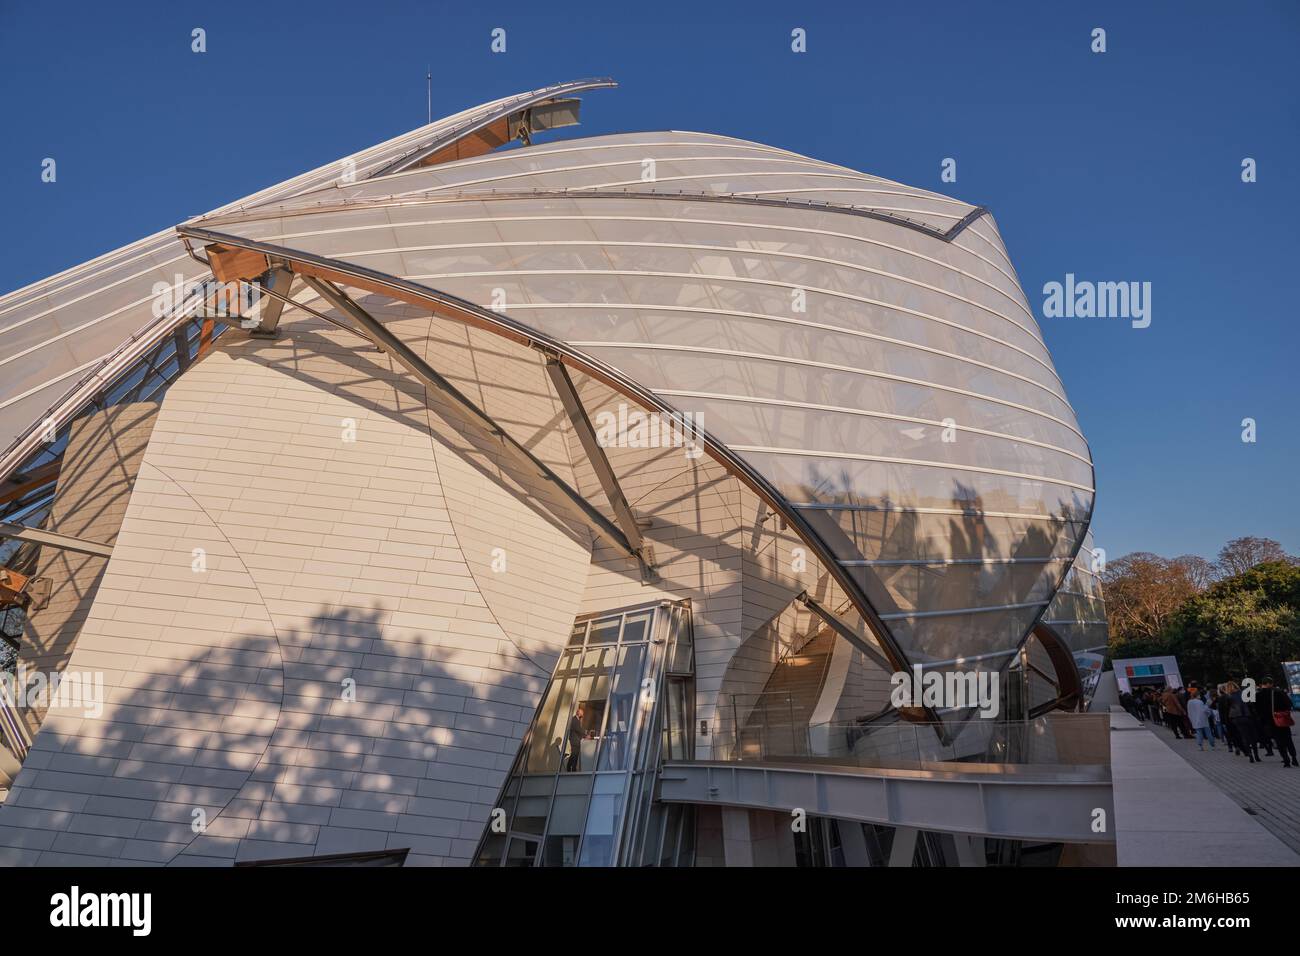 Moderne Architektur der Louis Vuitton Foundation (amerikanischer Architekt Frank Gehry), Kunstmuseum und Kulturzentrum in Paris, Franc Stockfoto